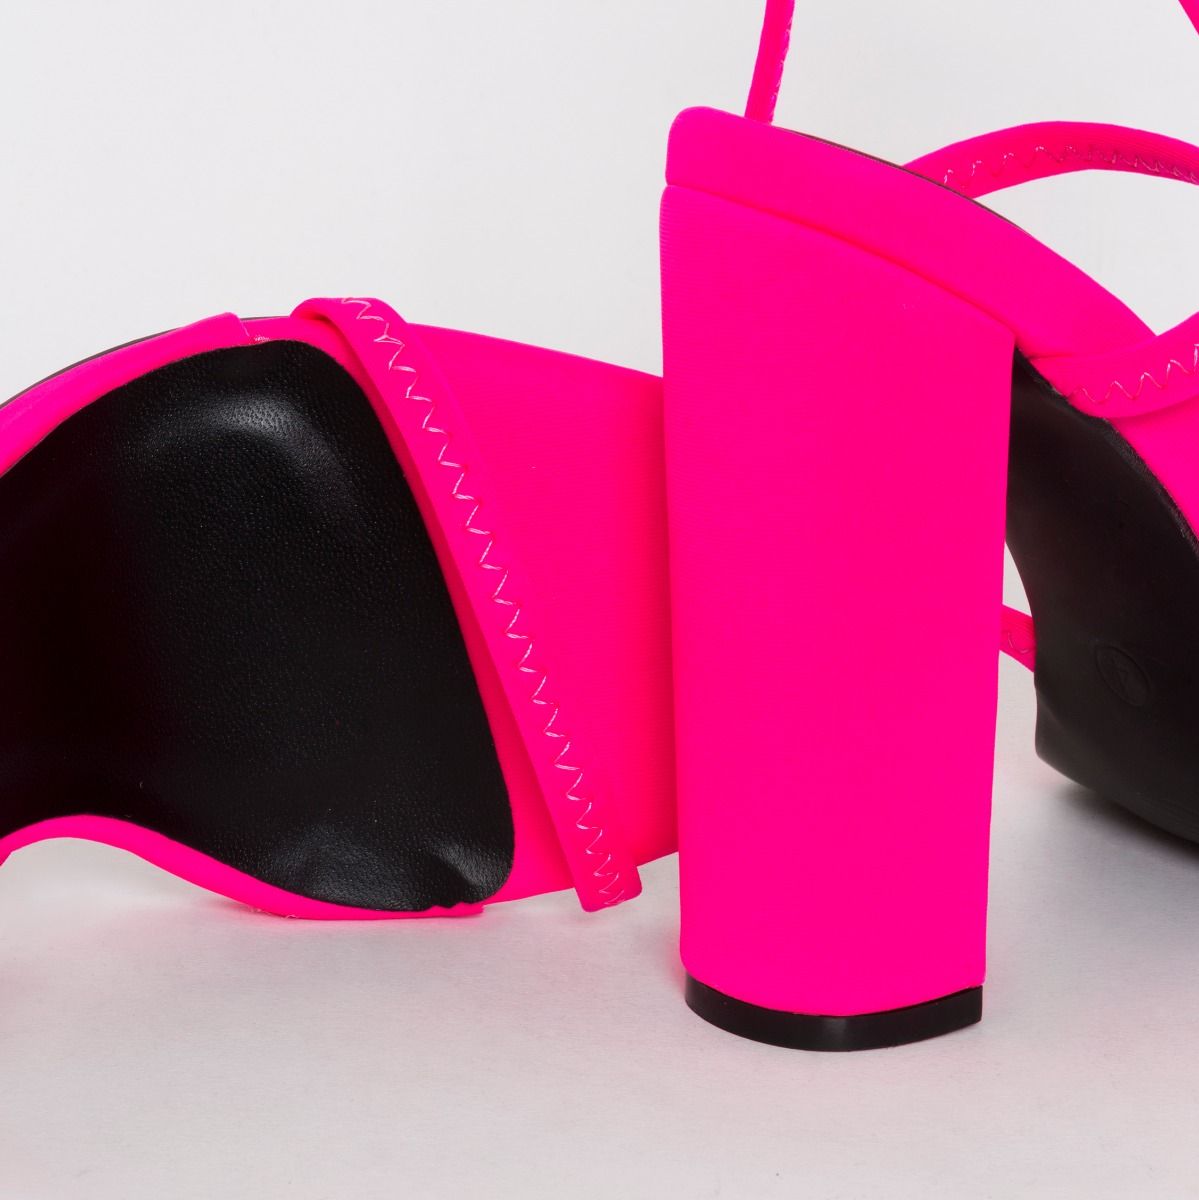 hot pink heels canada